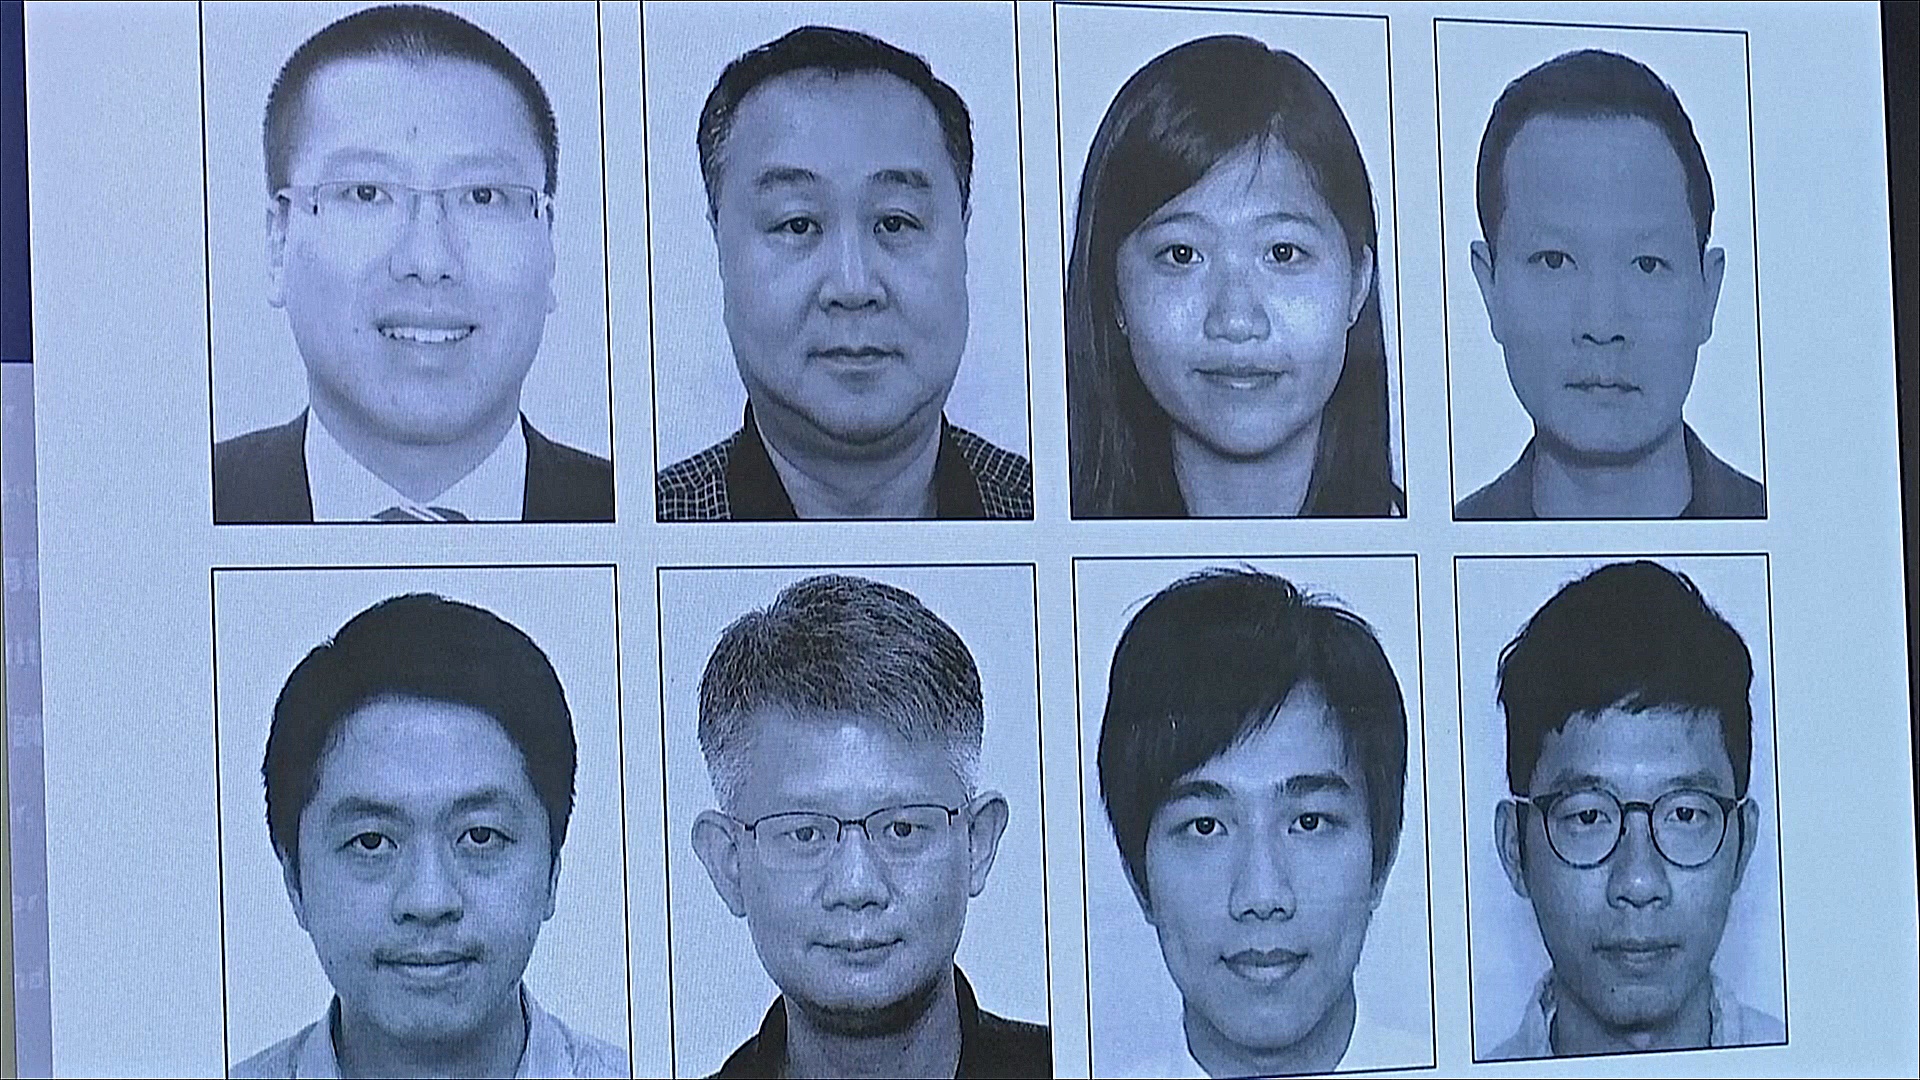 В Гонконге выдали ордер на арест восьмерых активистов